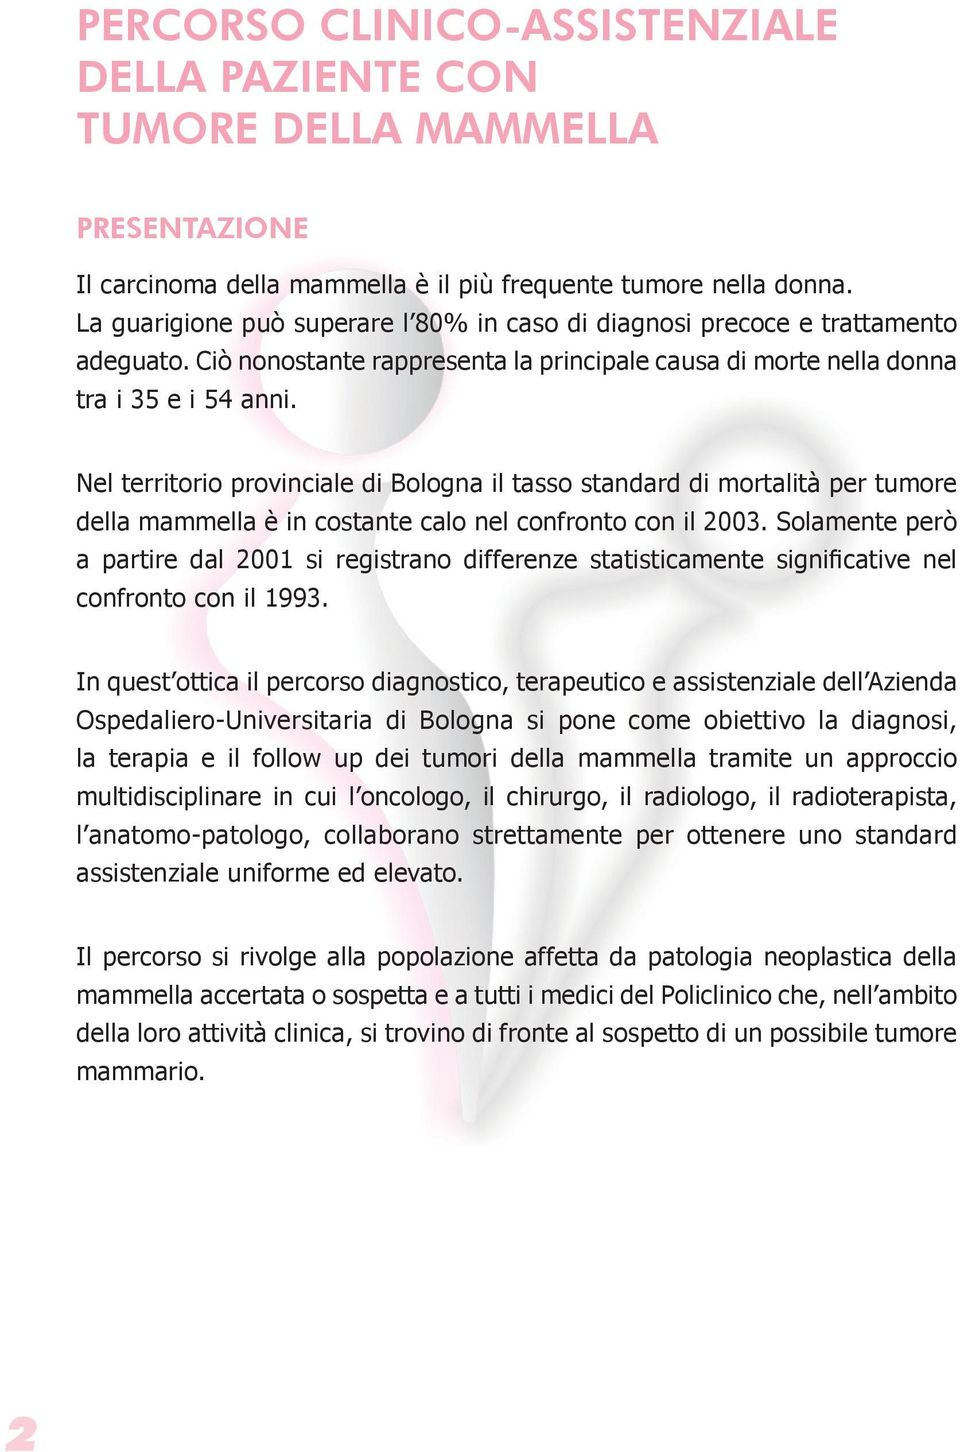 Nel territorio provinciale di Bologna il tasso standard di mortalità per tumore della mammella è in costante calo nel confronto con il 2003.